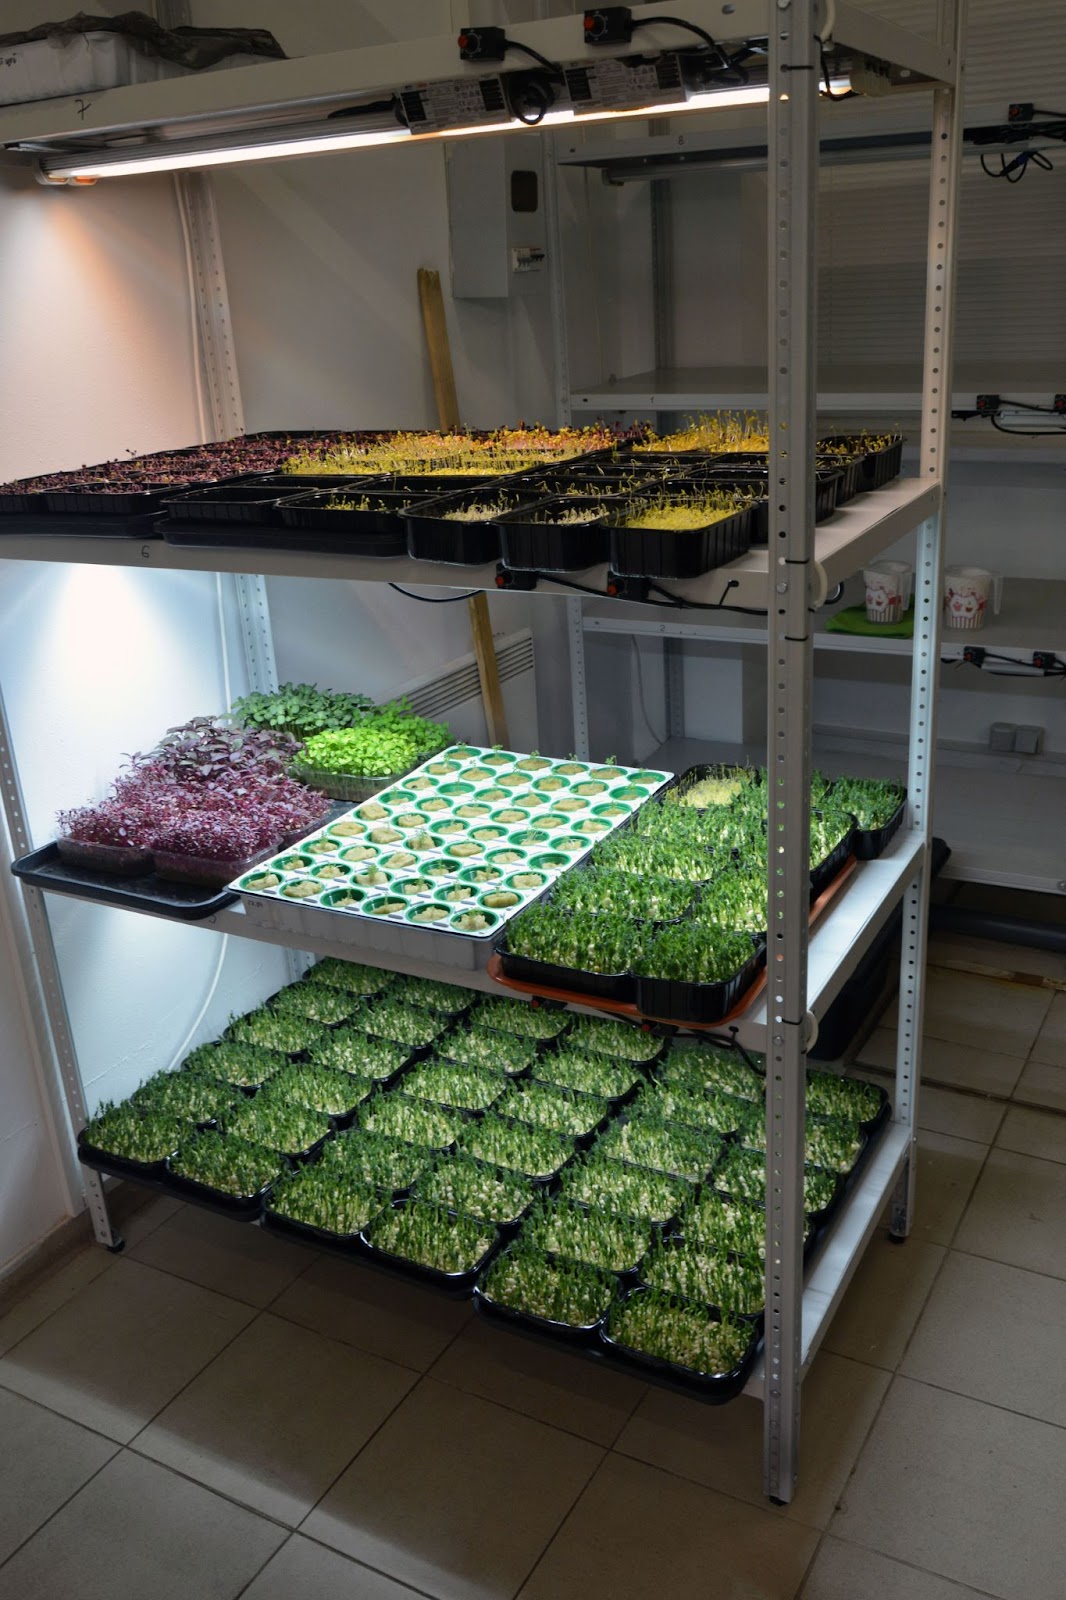 Выращивание микрозелени в стеллажной системе (тестовая площадка LedFarm.by)